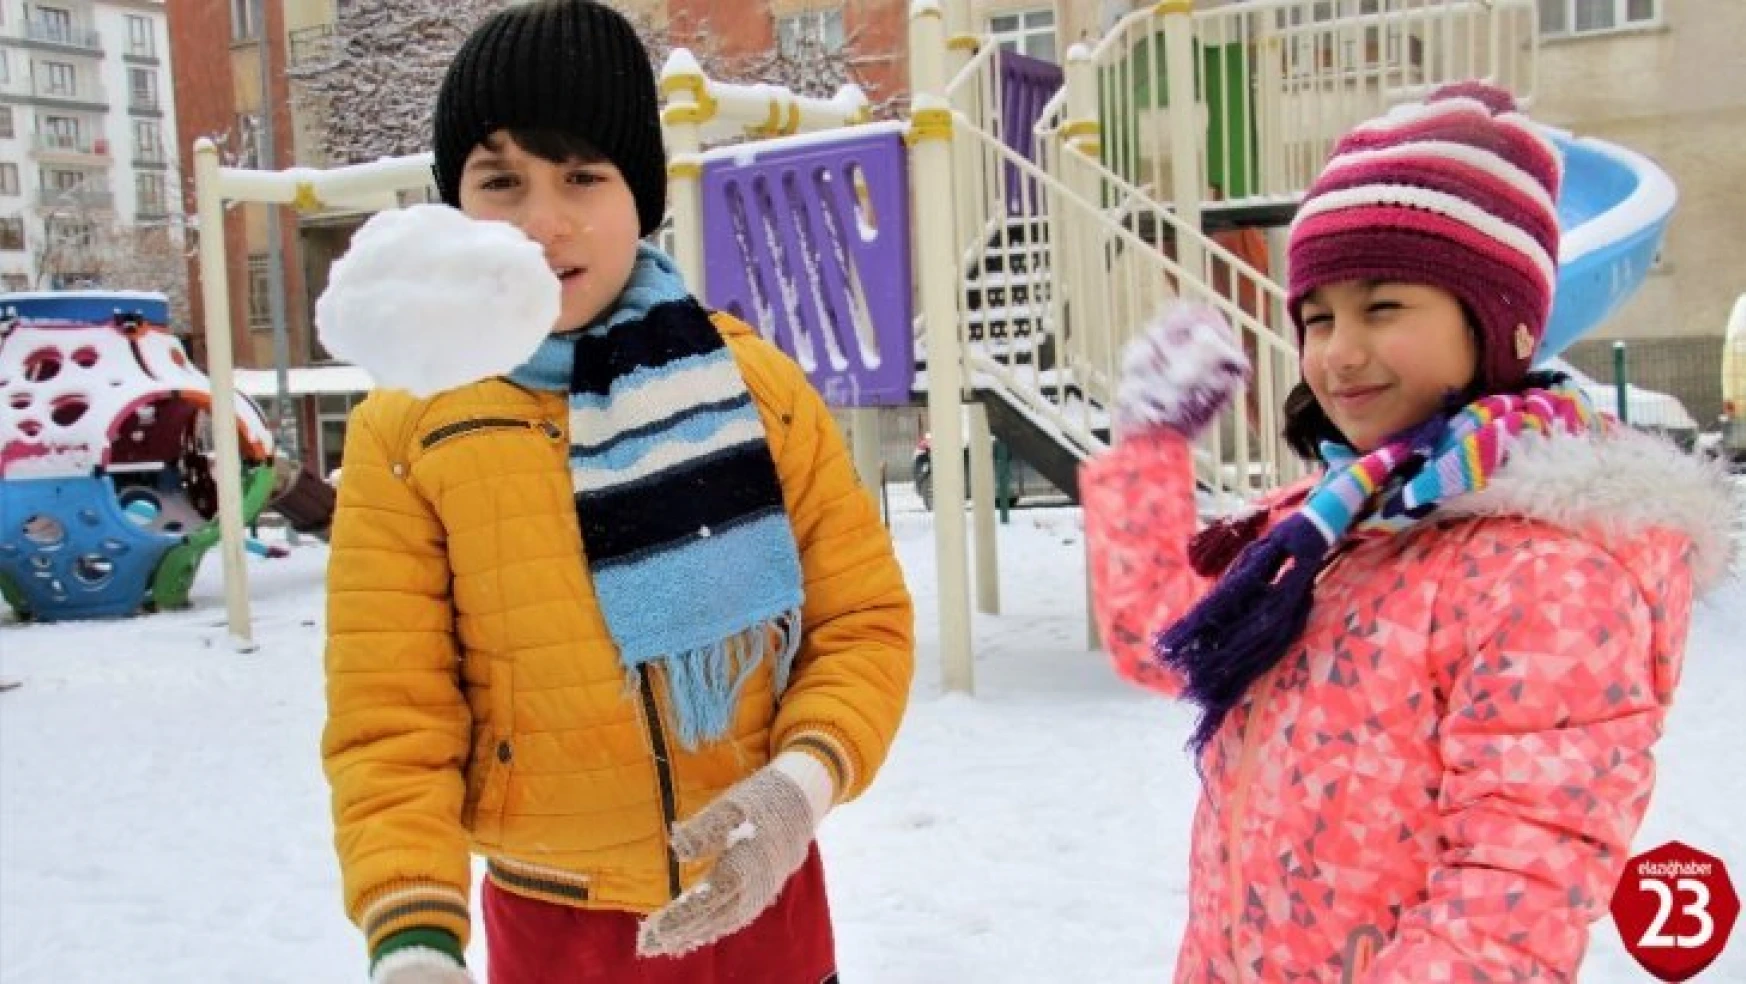 Elazığ'da çocukların kar sevinci